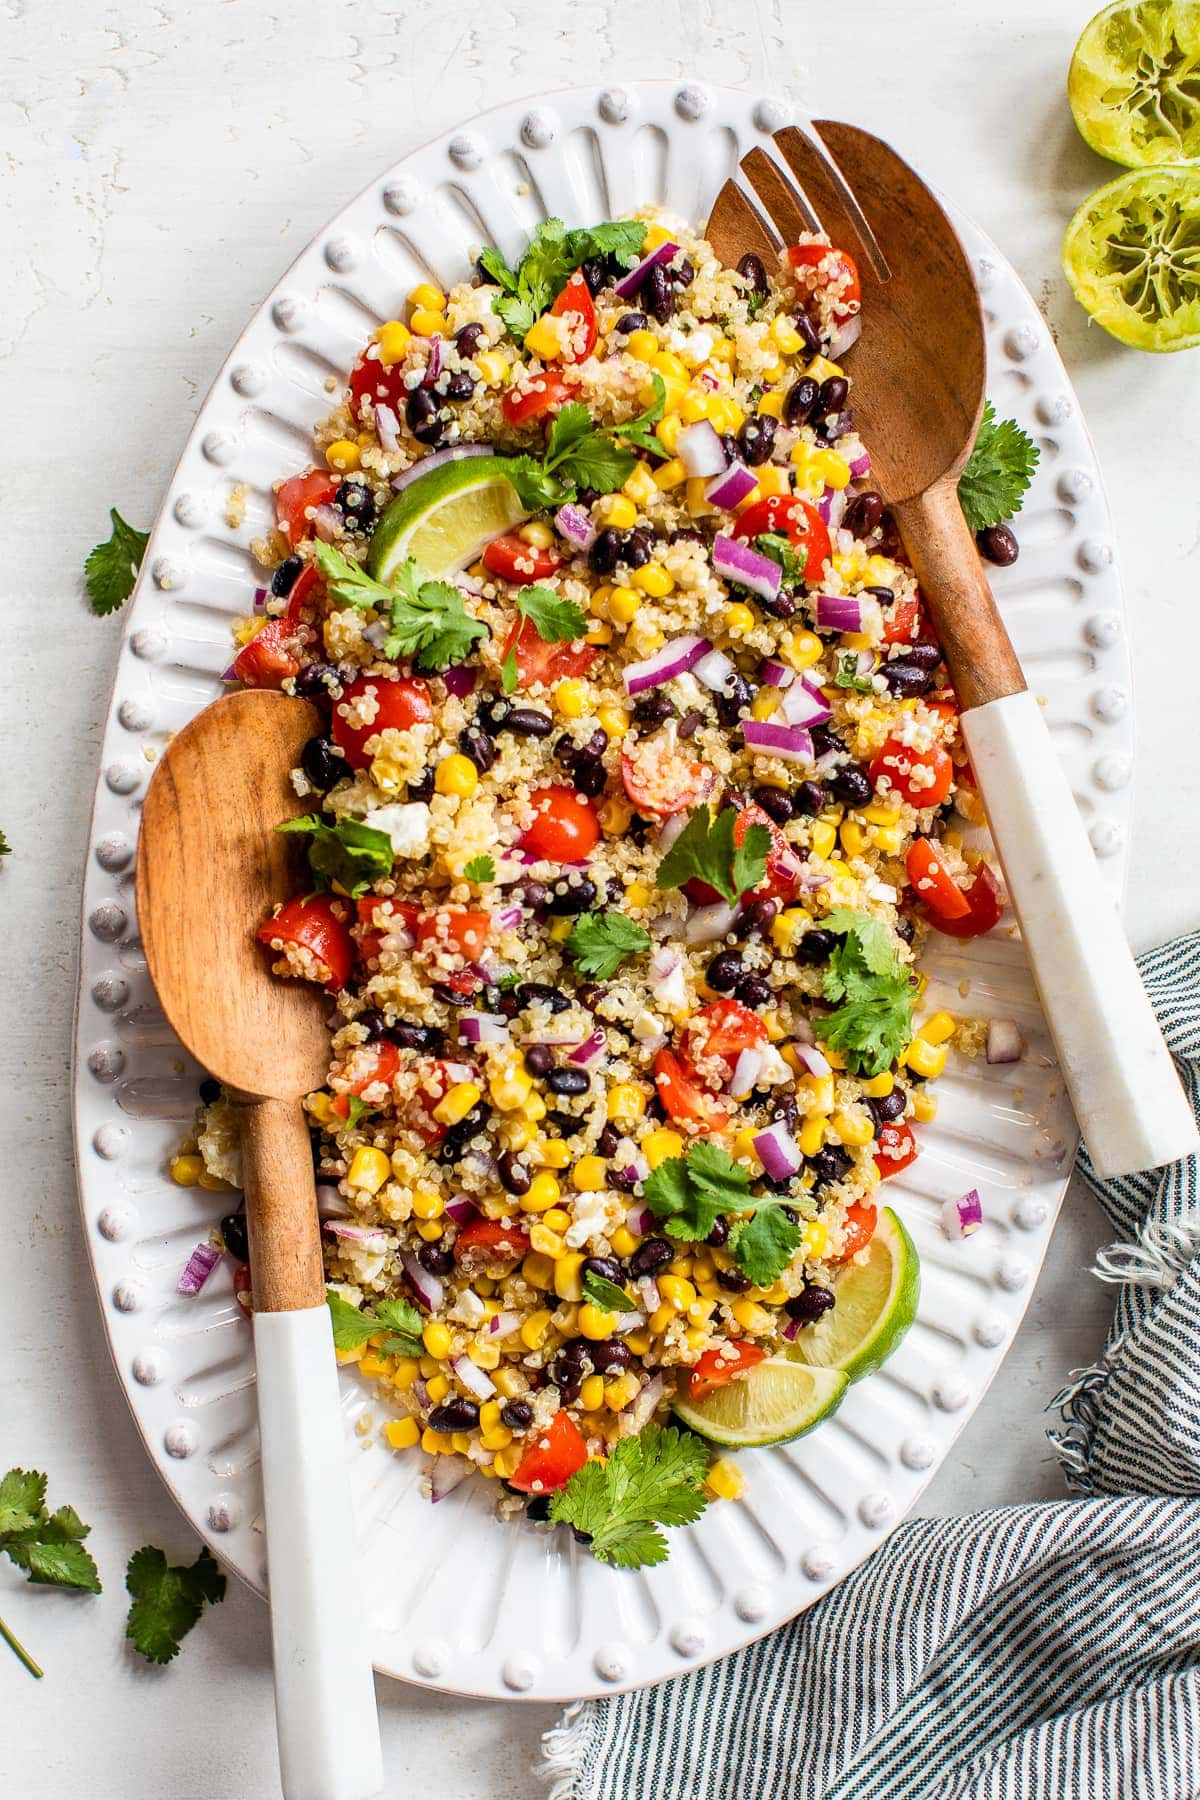 Mexican Quinoa Salad